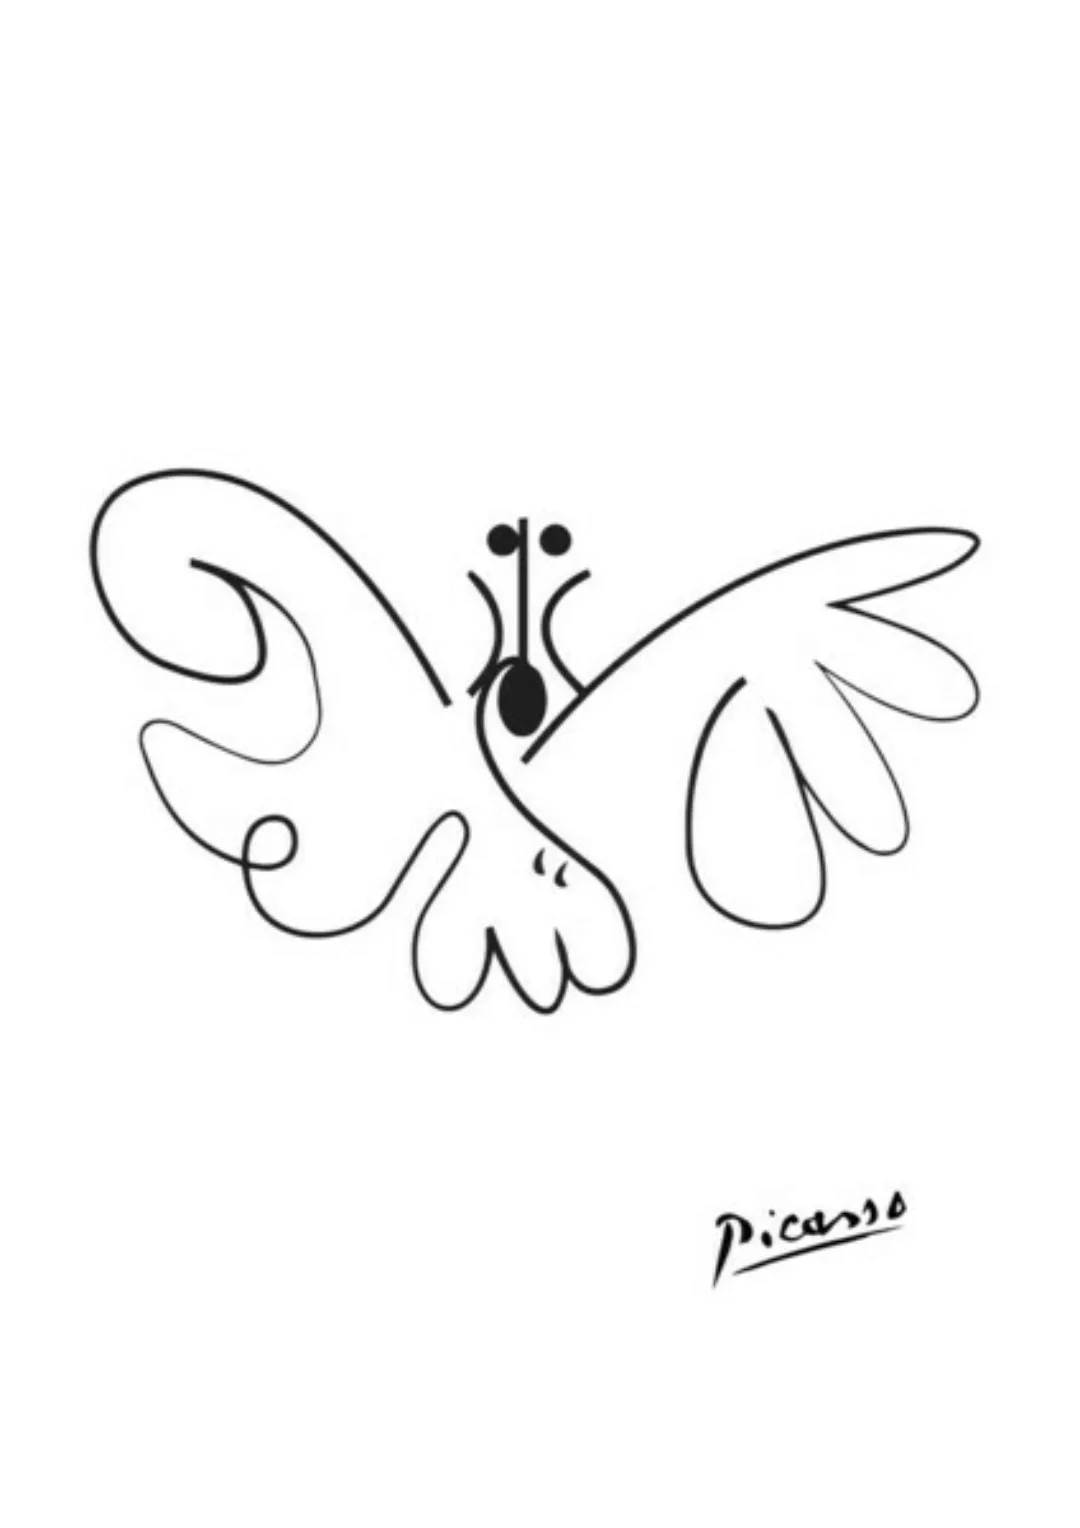 Poster / Leinwandbild - Picasso Schmetterling günstig online kaufen